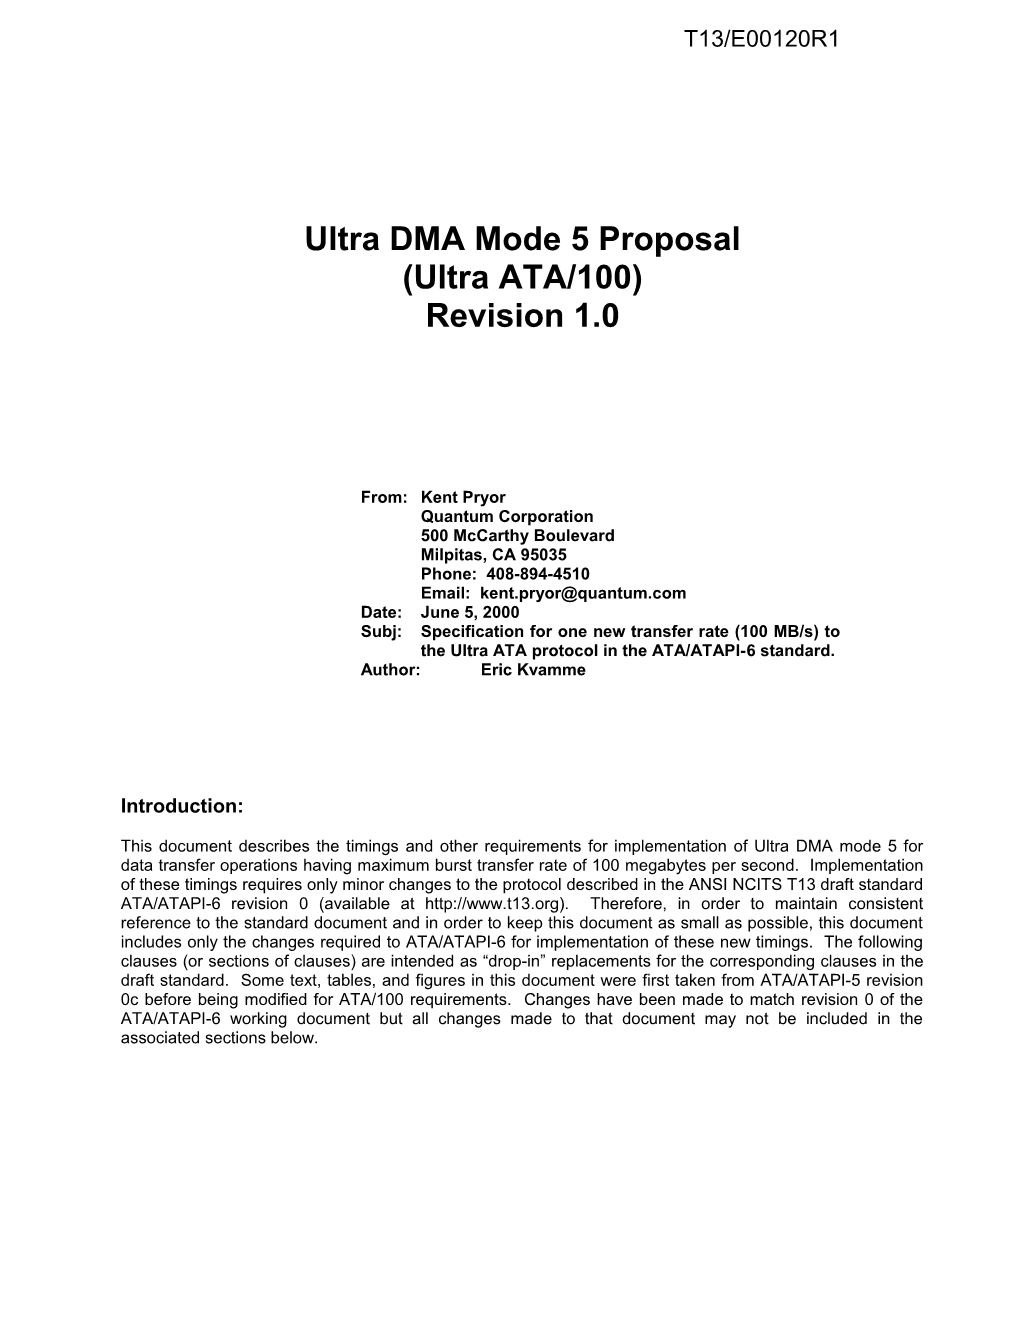 Ultra DMA Mode 5 Proposal